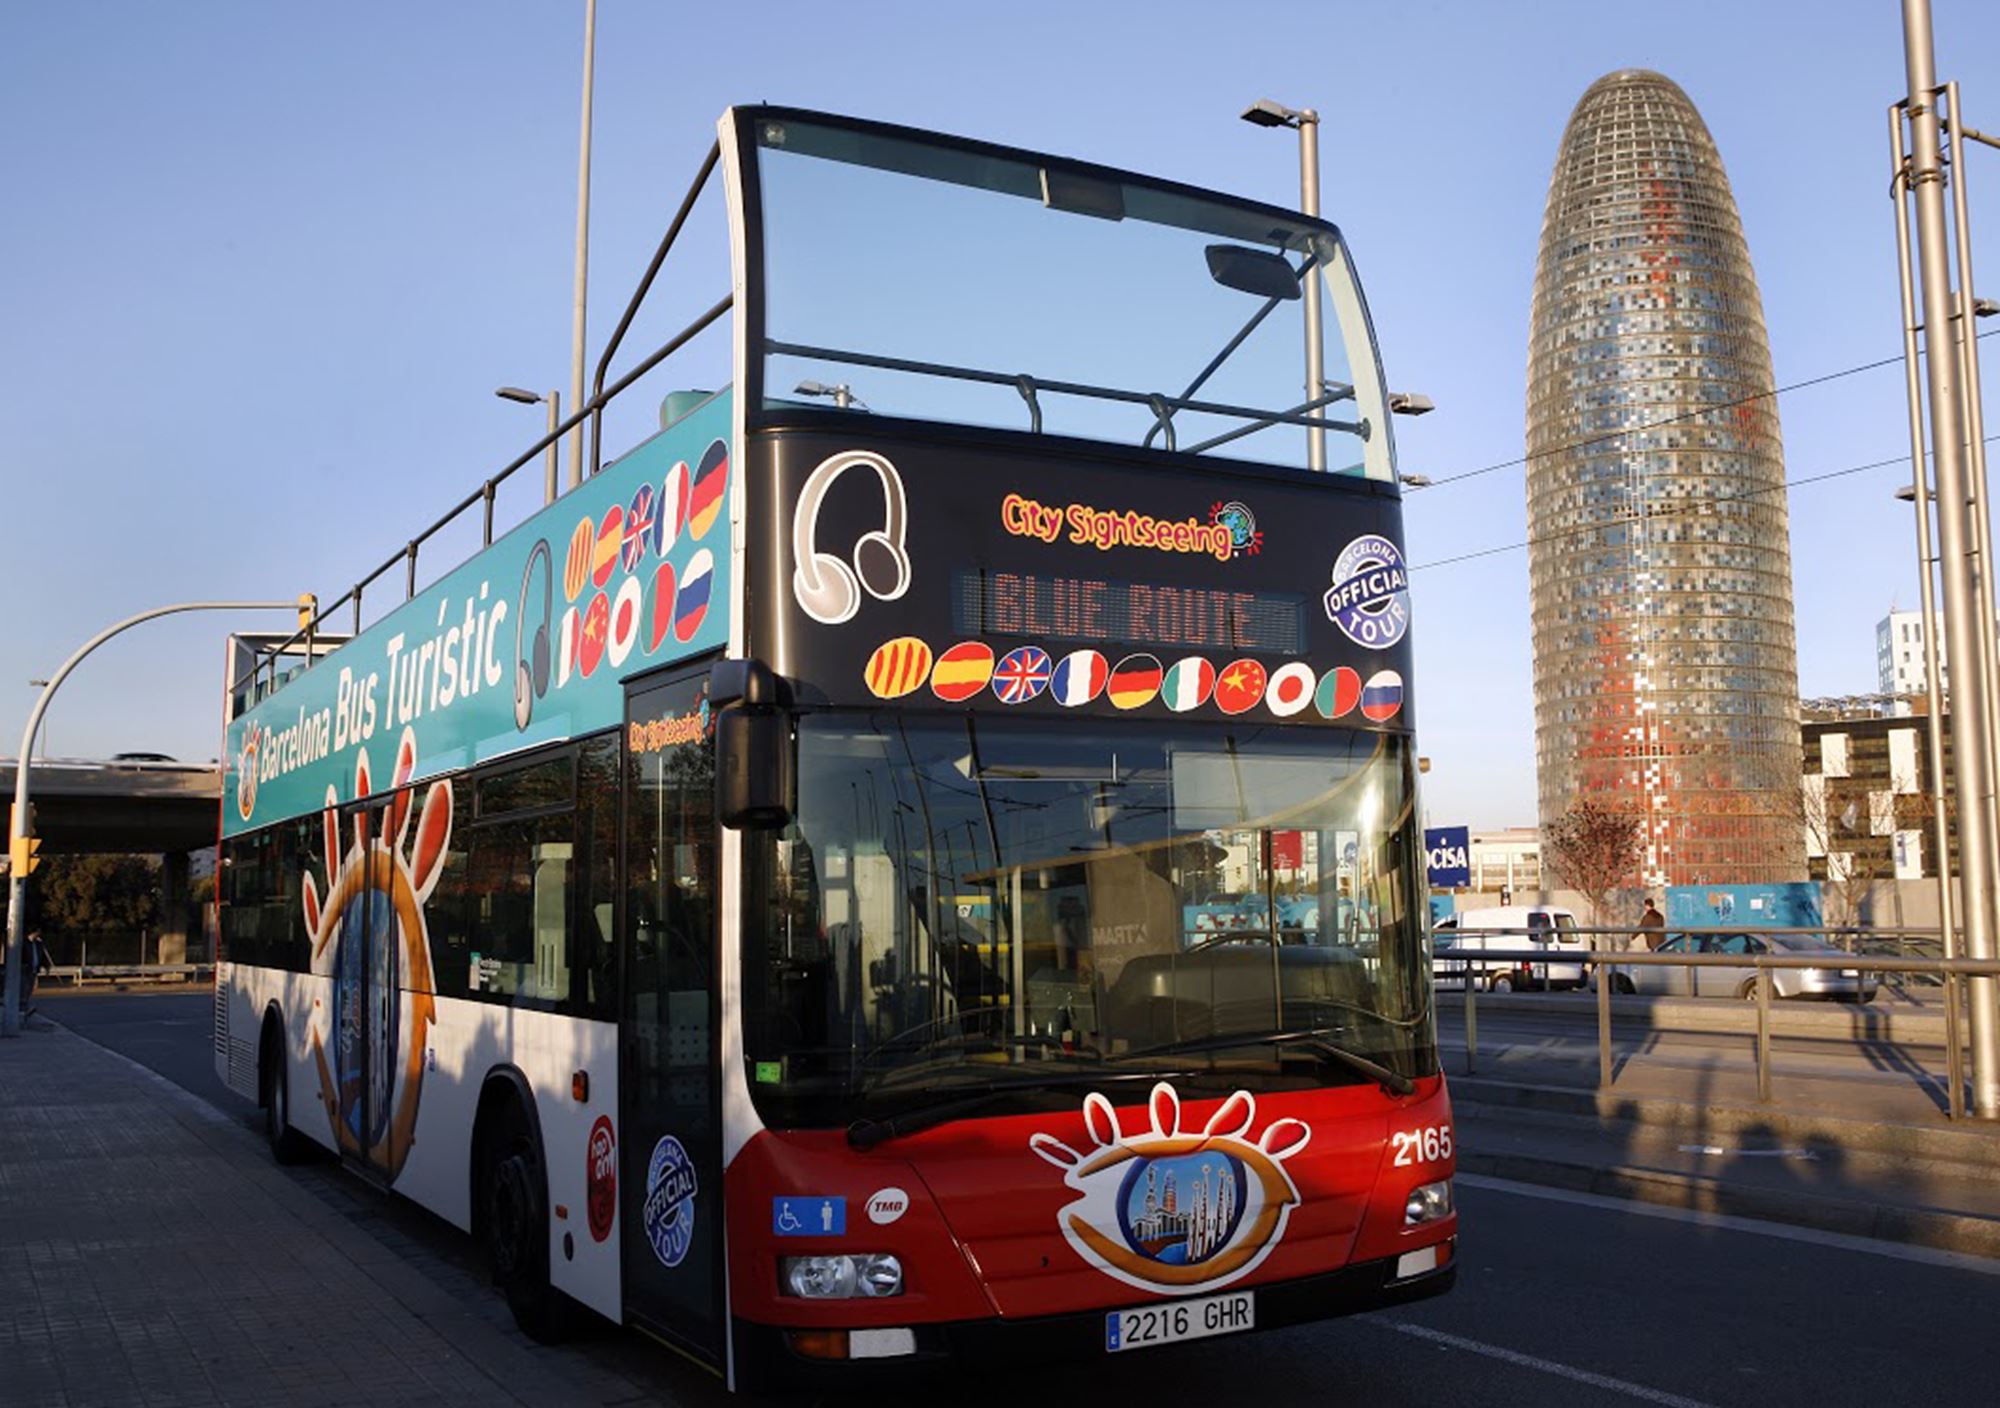 reservieren kaufen buchung tickets besucht Touren Fahrkarte karte karten Eintrittskarten Touristikbus City Sightseeing Barcelona